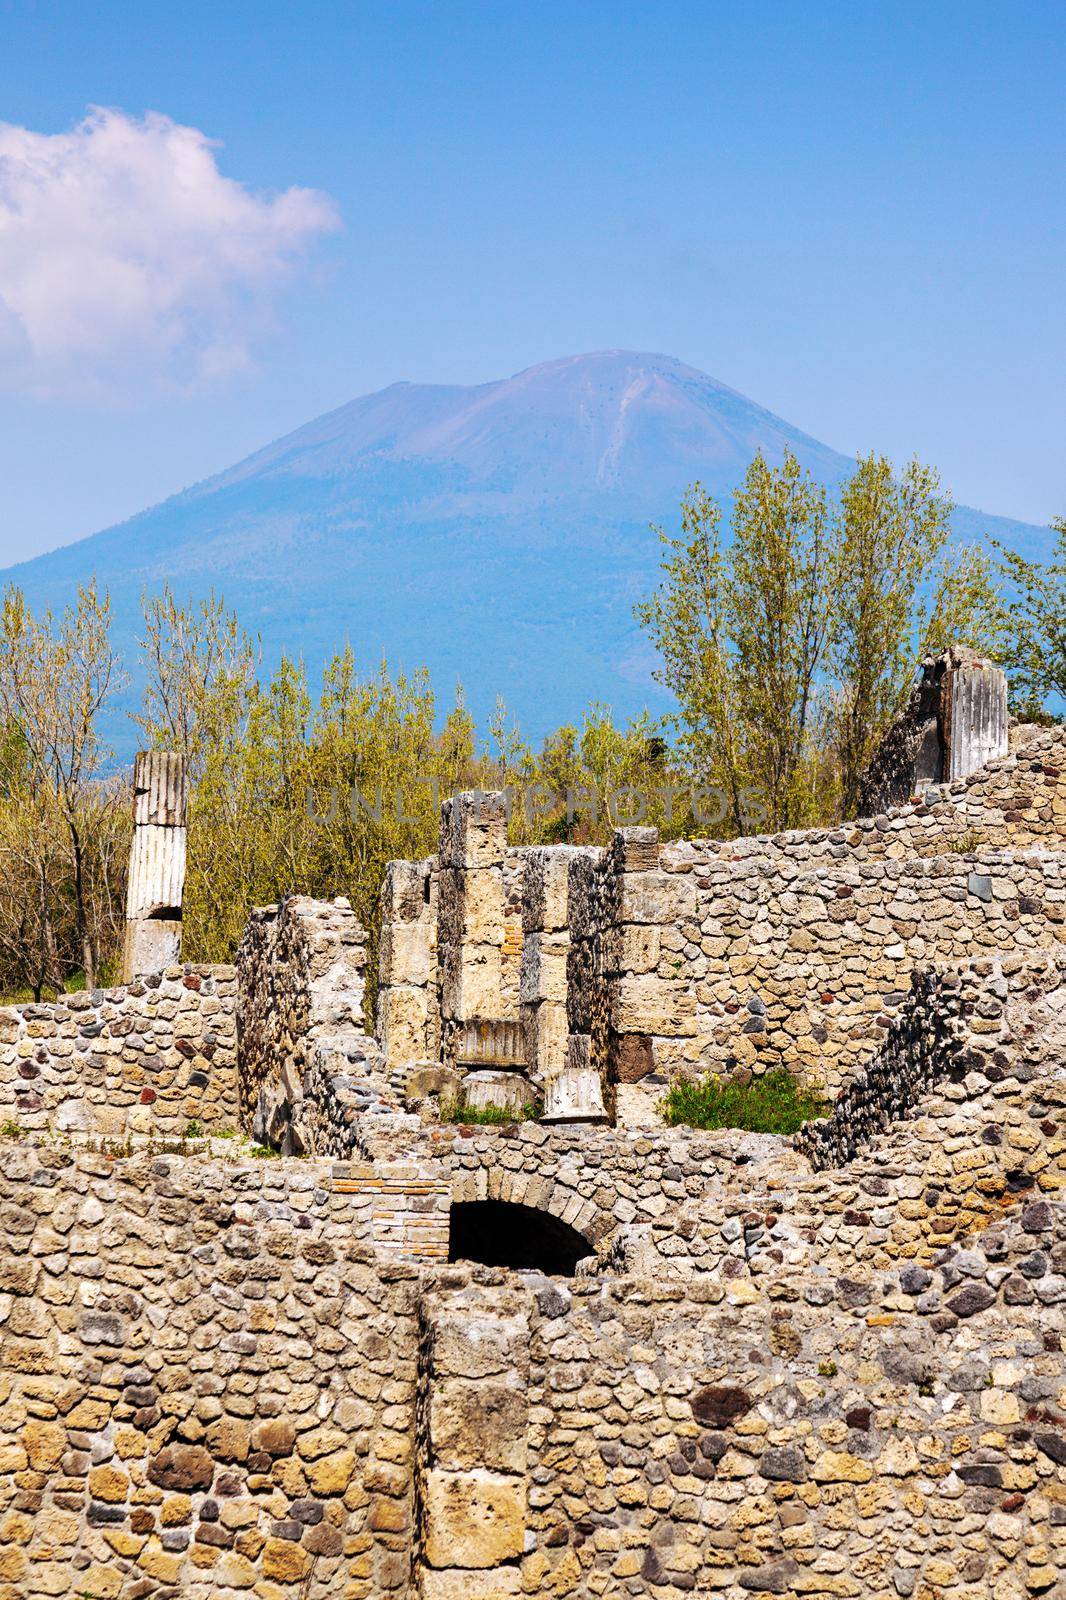 Pompei ruins and Mount Vesuvius. Pompei, Campania, Italy.